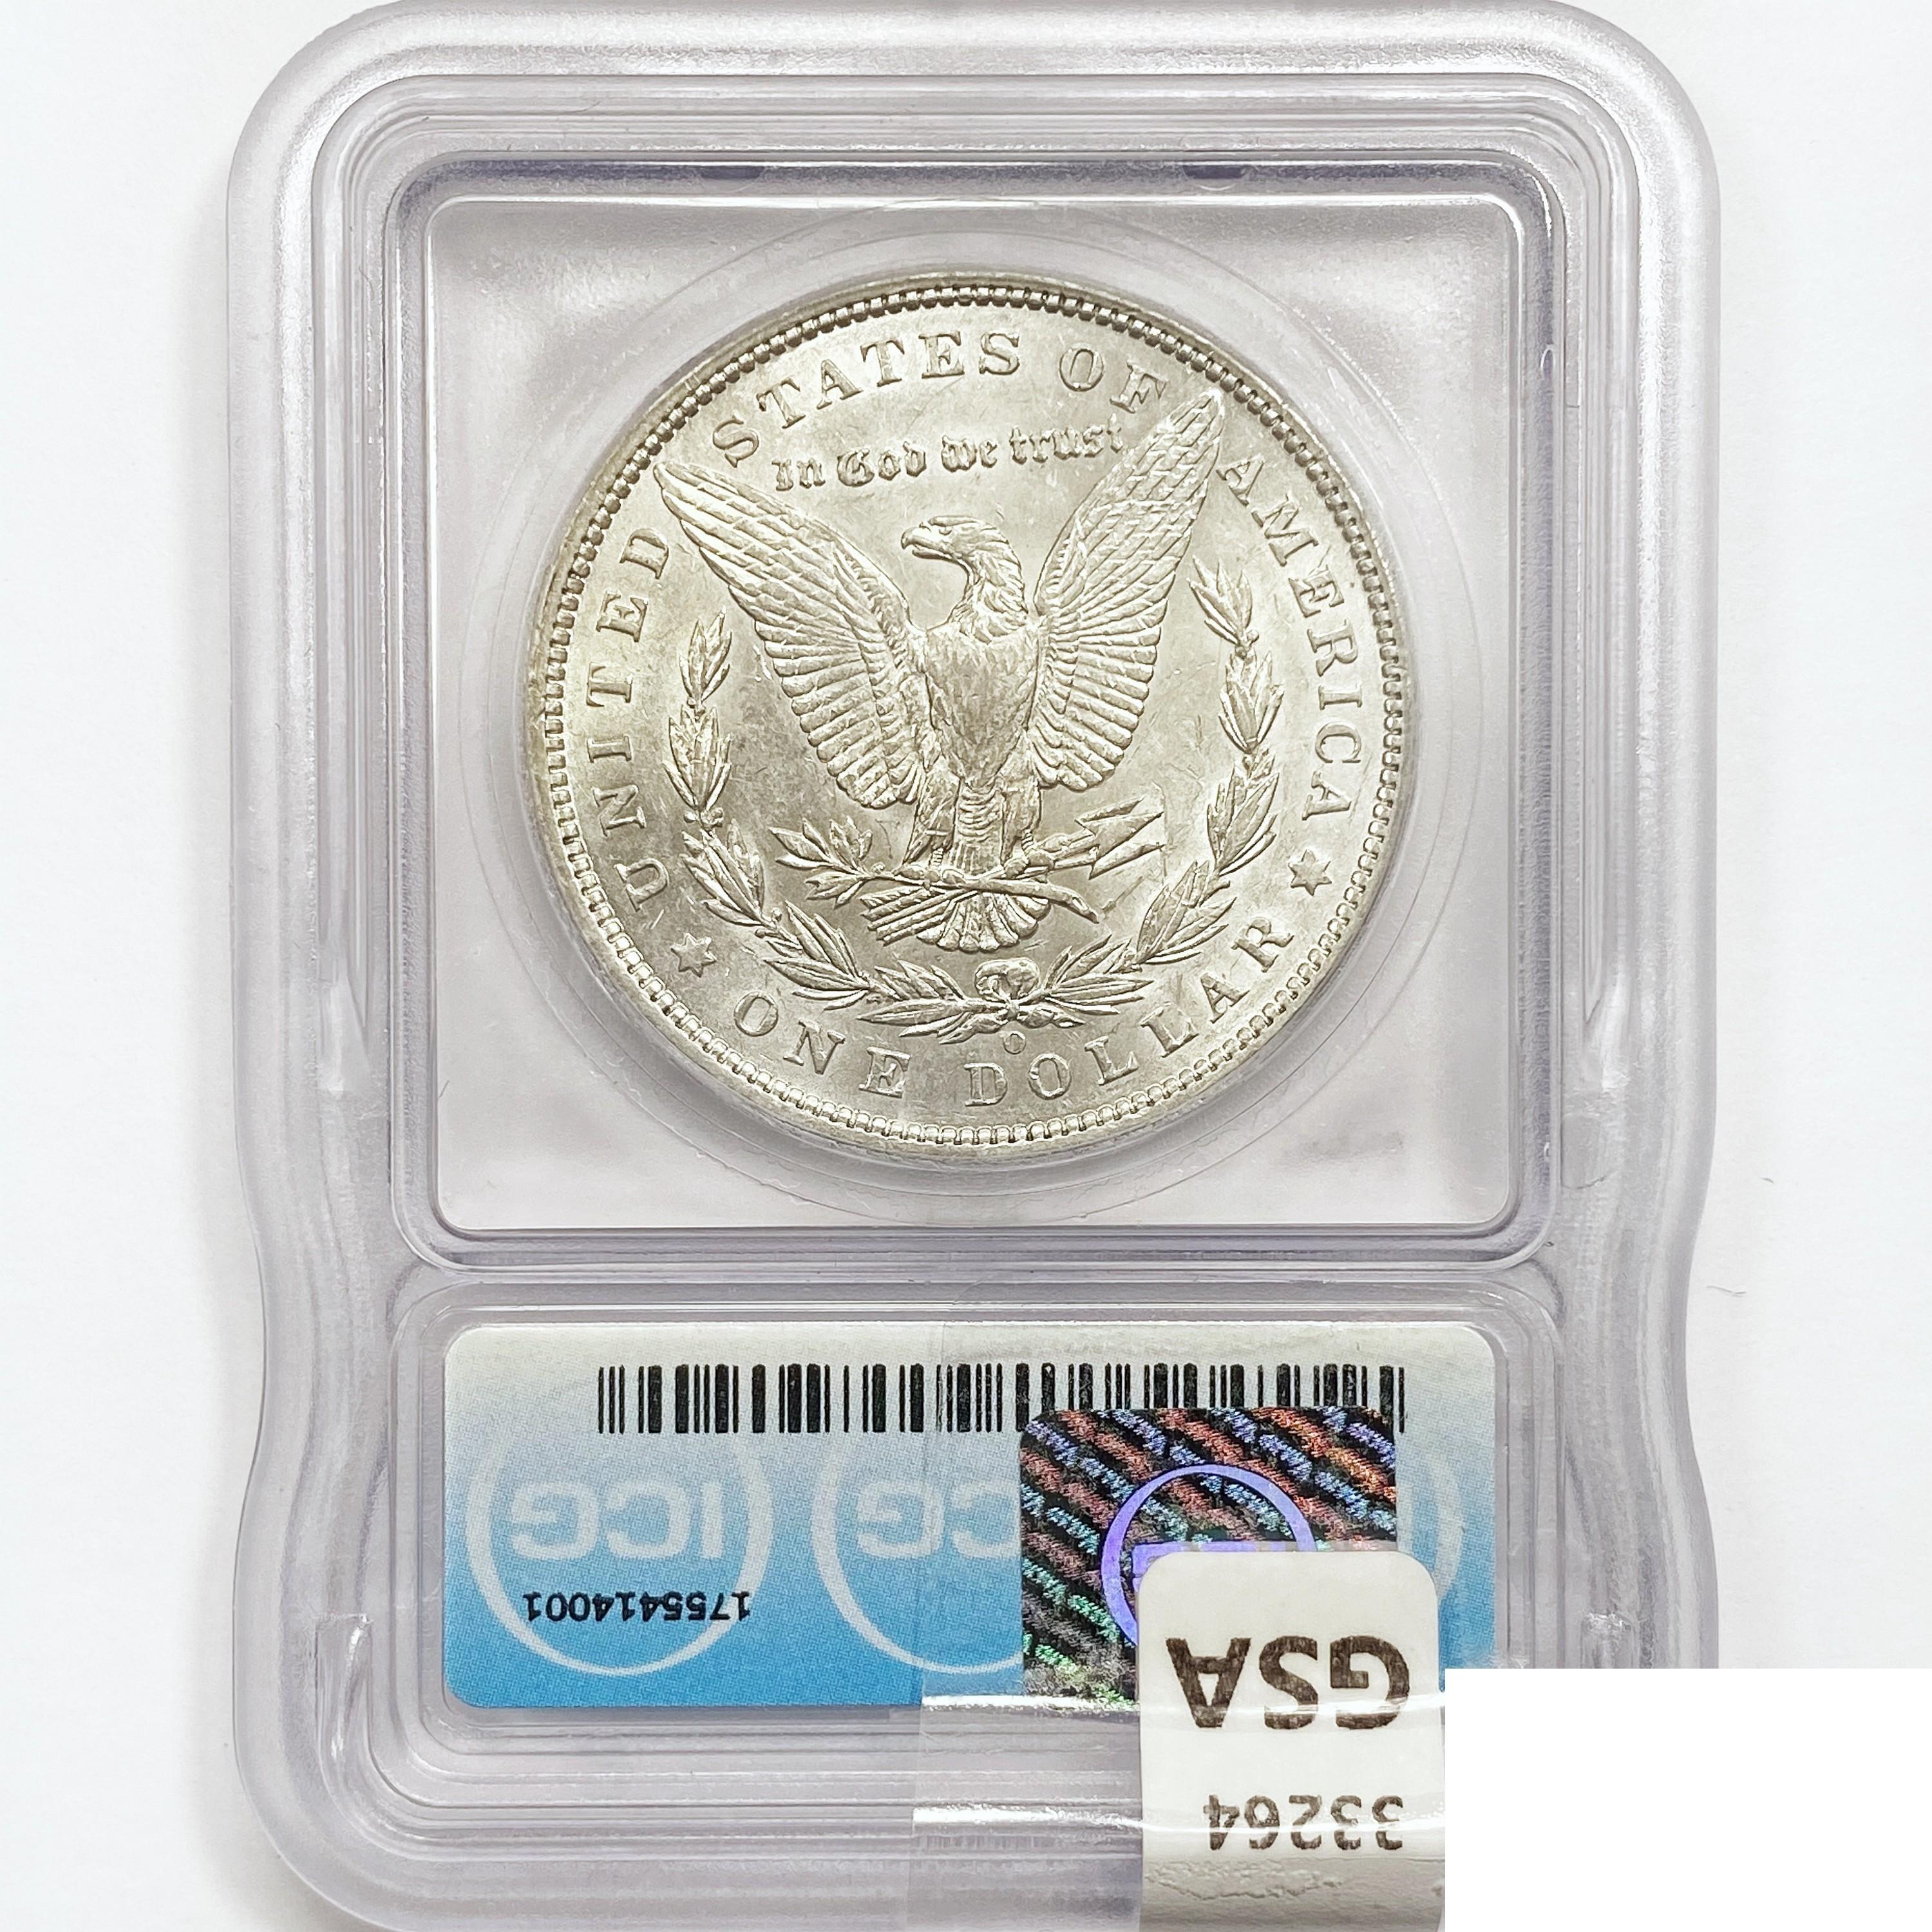 1897-O Morgan Silver Dollar ICG AU55